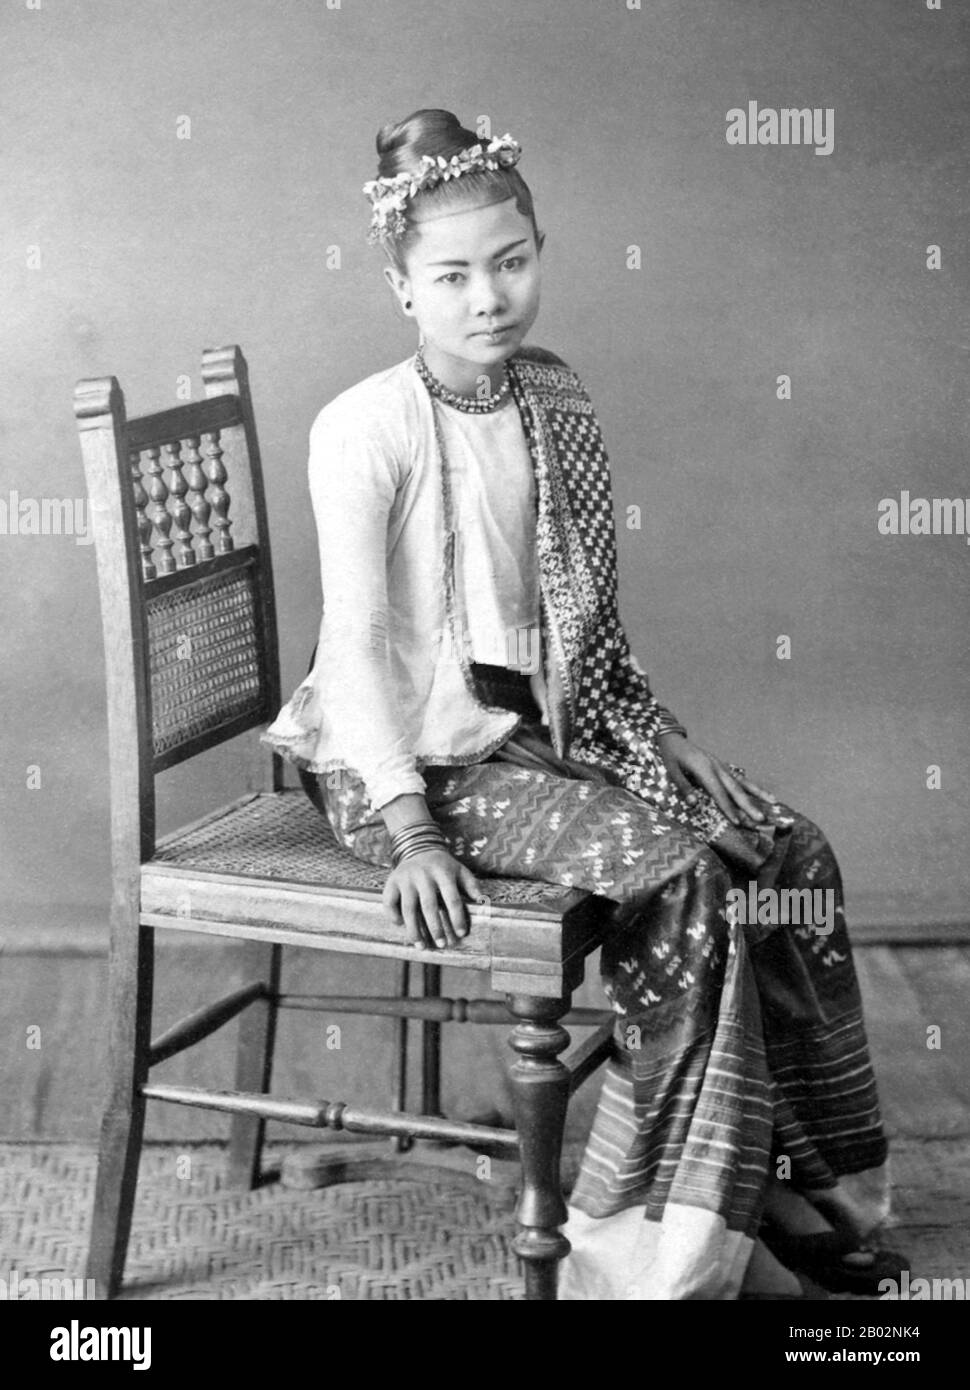 La jeune femme porte une hta-mein rayée (jupe enveloppante) et une veste ajustée de mousseline fine ou de coton connue sous le nom d'éine-gyi. Dans ses cheveux, elle porte un bandeau floral et elle est ornée de colliers, boucles d'oreilles, bracelets et bagues. Pendant la dynastie Konbaung (1752-1885), de riches bijoux, de beaux tissus tels que la soie et des vêtements tels que sa veste étaient réservés aux responsables de la cour et à leurs épouses par la loi. Après la chute de la monarchie birmane en 1885, ils ont été portés par les riches. Cette photo est tirée d'un album qui enregistre des aspects de la tournée de Lord Elgin en Birmanie de novembre à décembre 1898. Banque D'Images